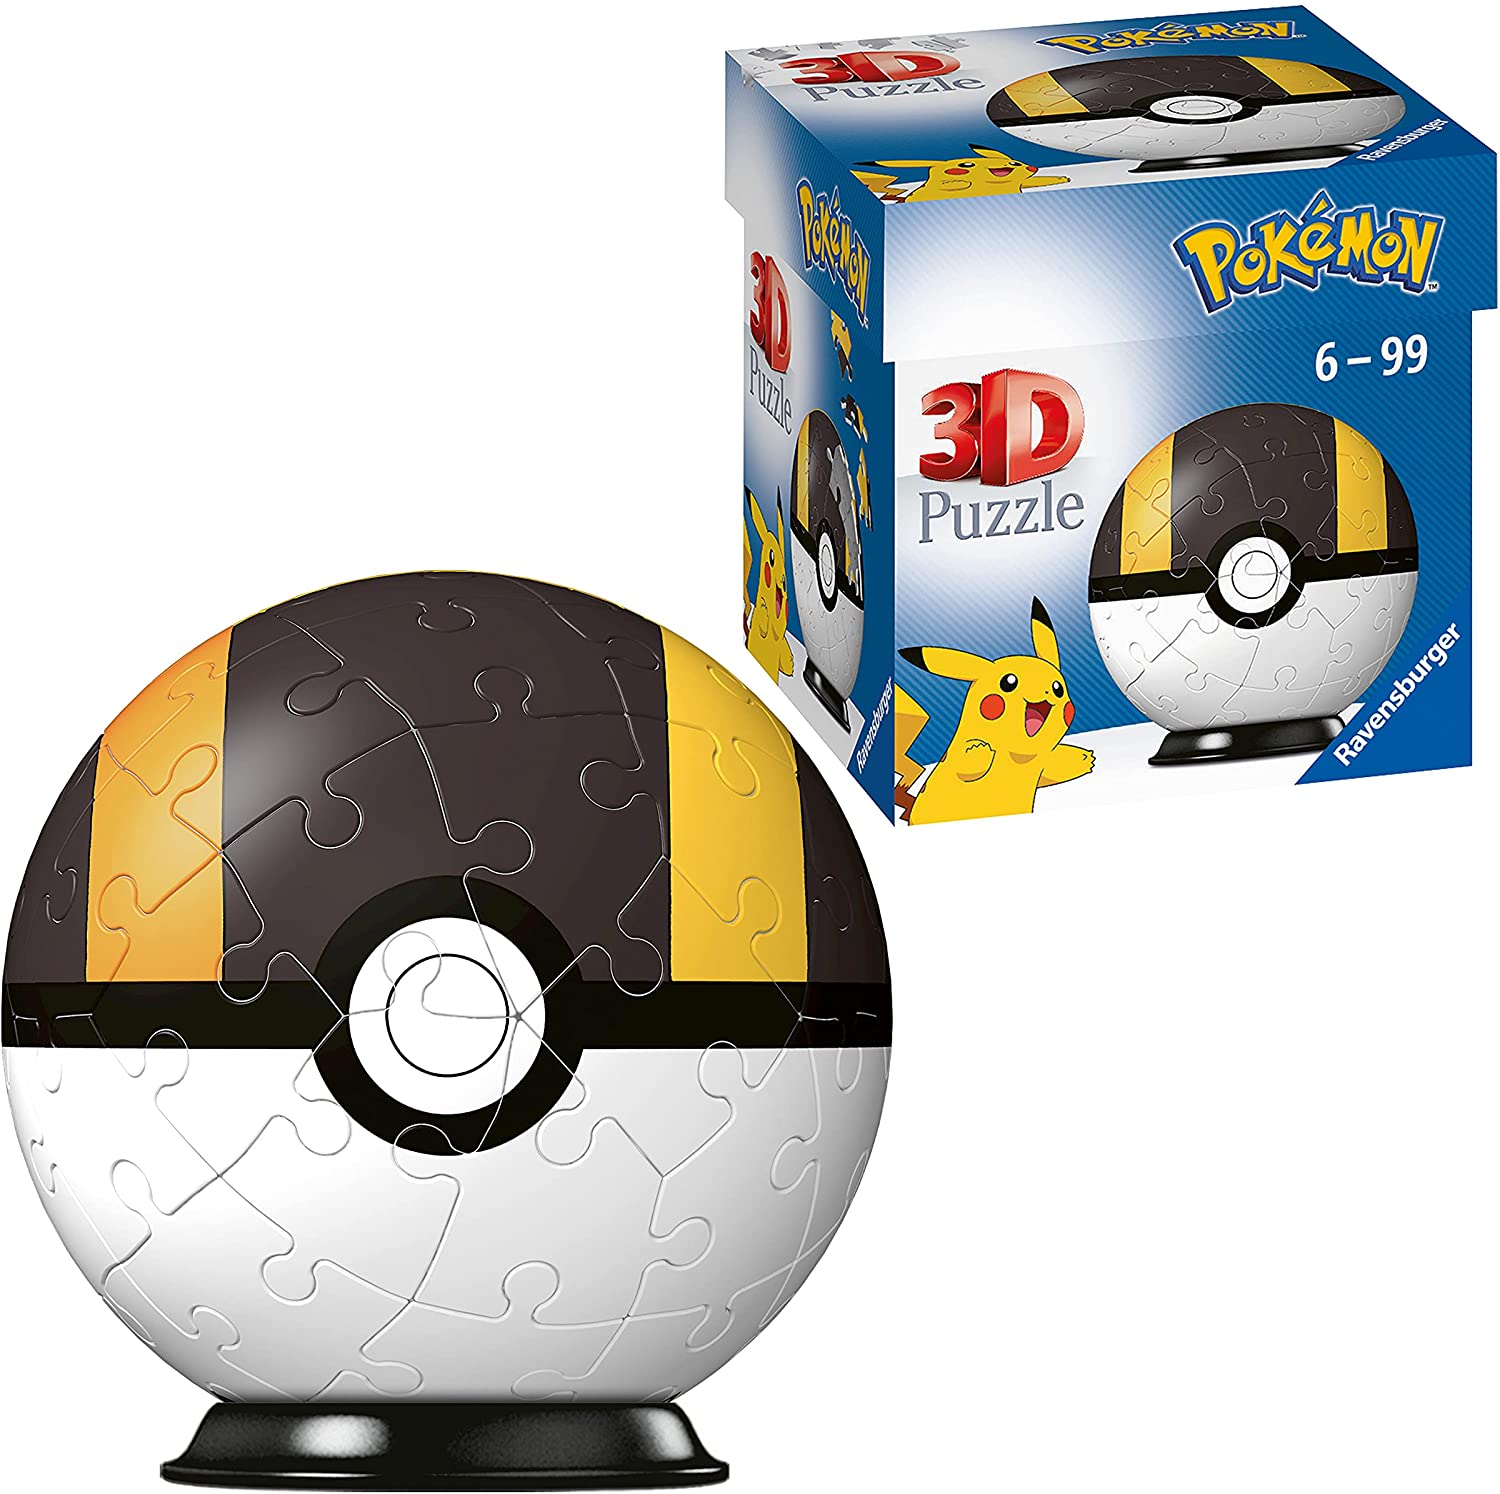 Pokémon - Pokéball 3D-Puzzleball - Hyperball